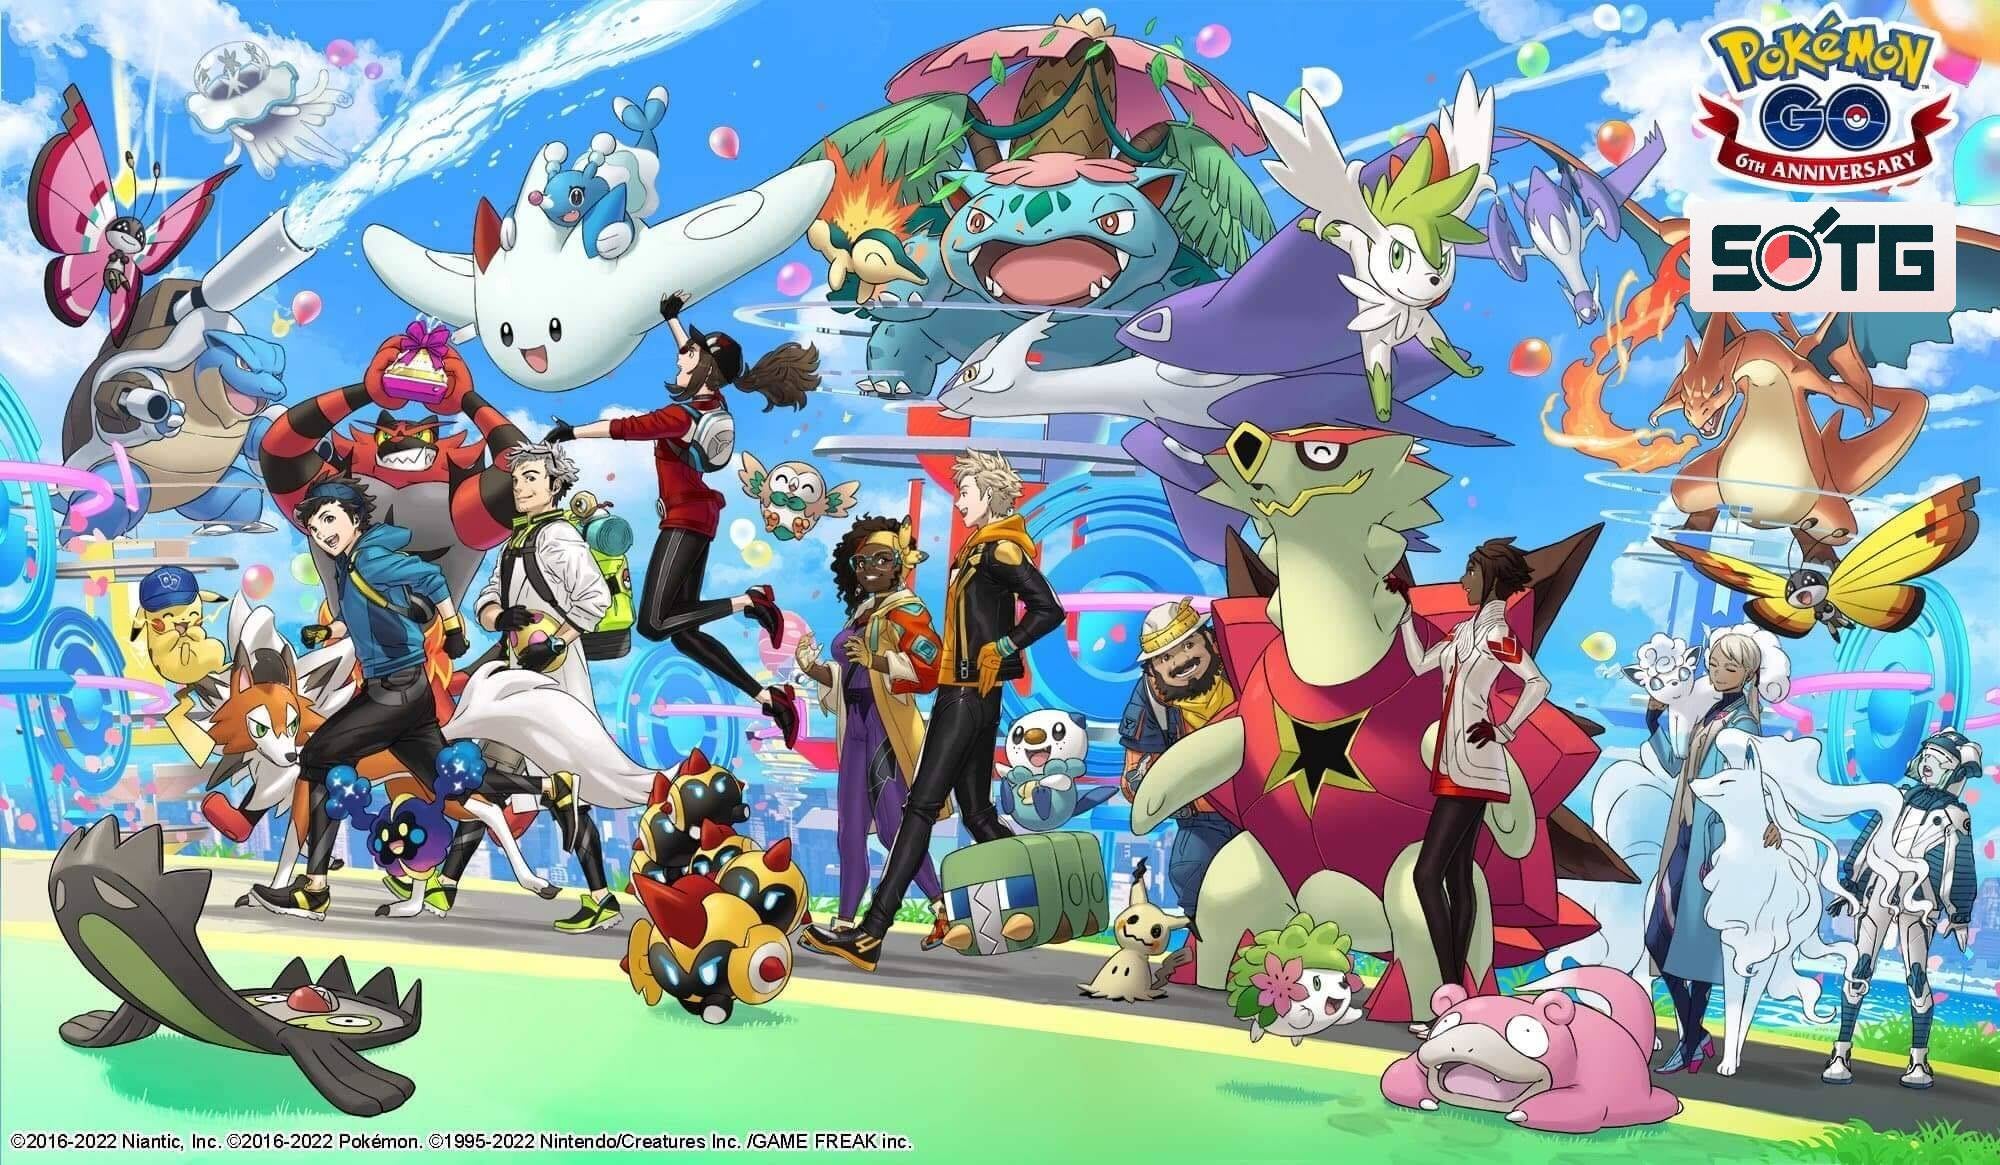 State of the Game: Pokémon Go - the phenomenon that's now a